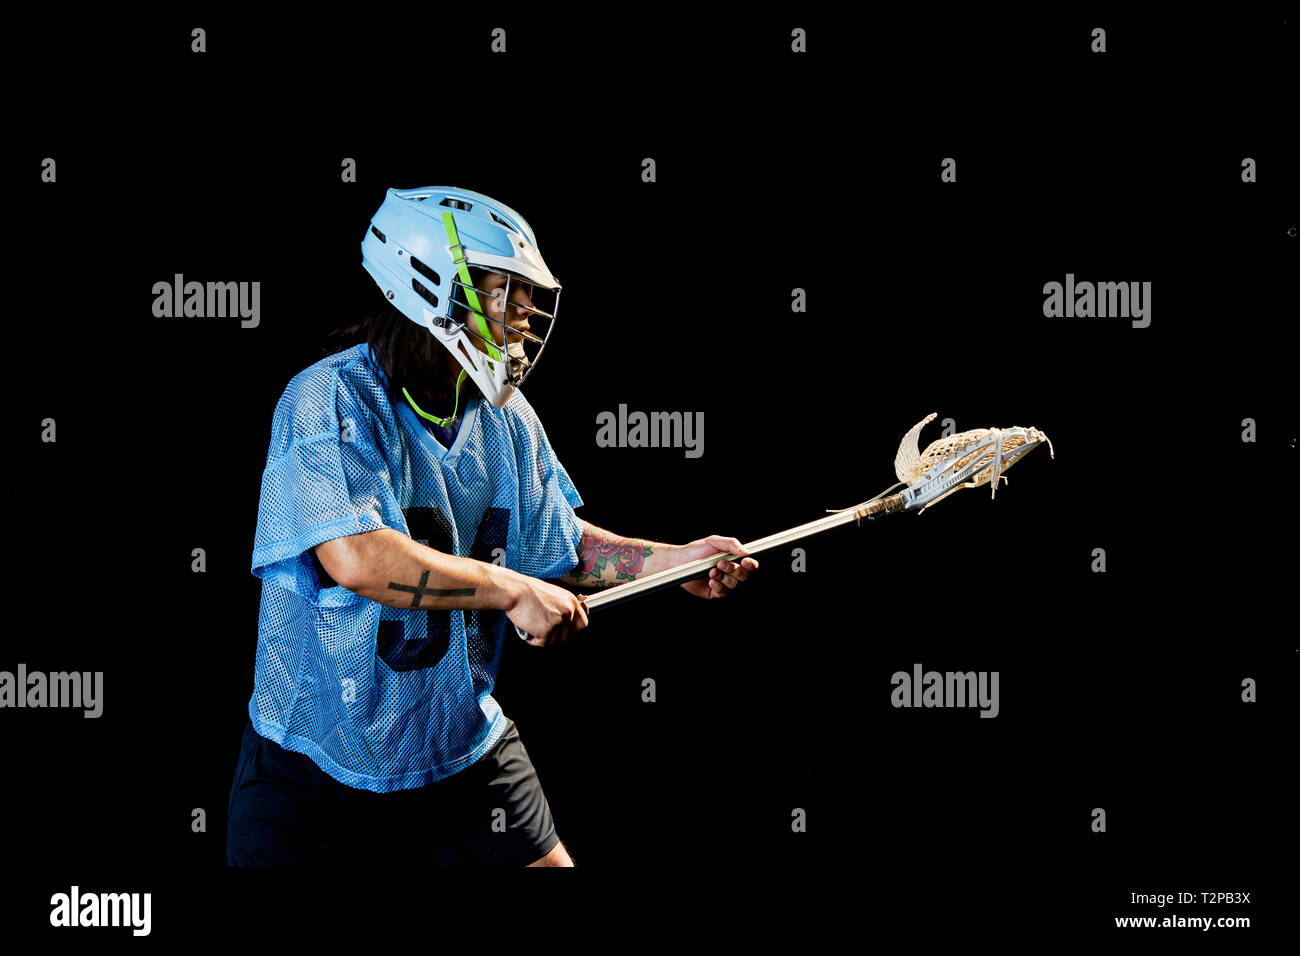 Giovane maschio lacrosse player in bilico con lacrosse stick, su sfondo nero Foto Stock